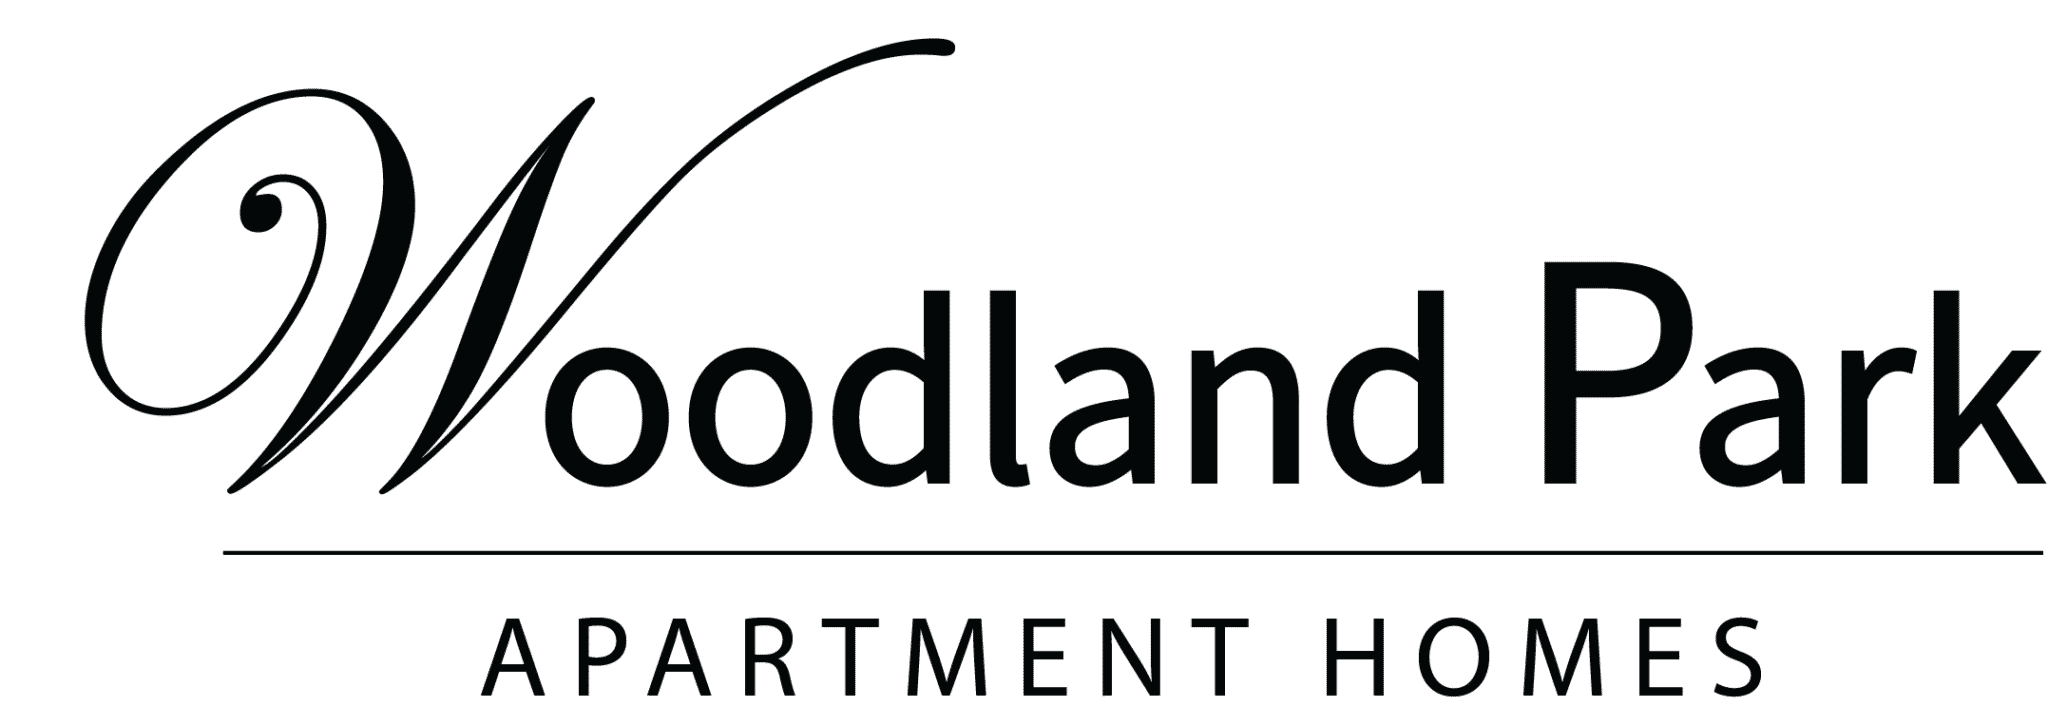 Woodland Park Apartment Homes Black Logo